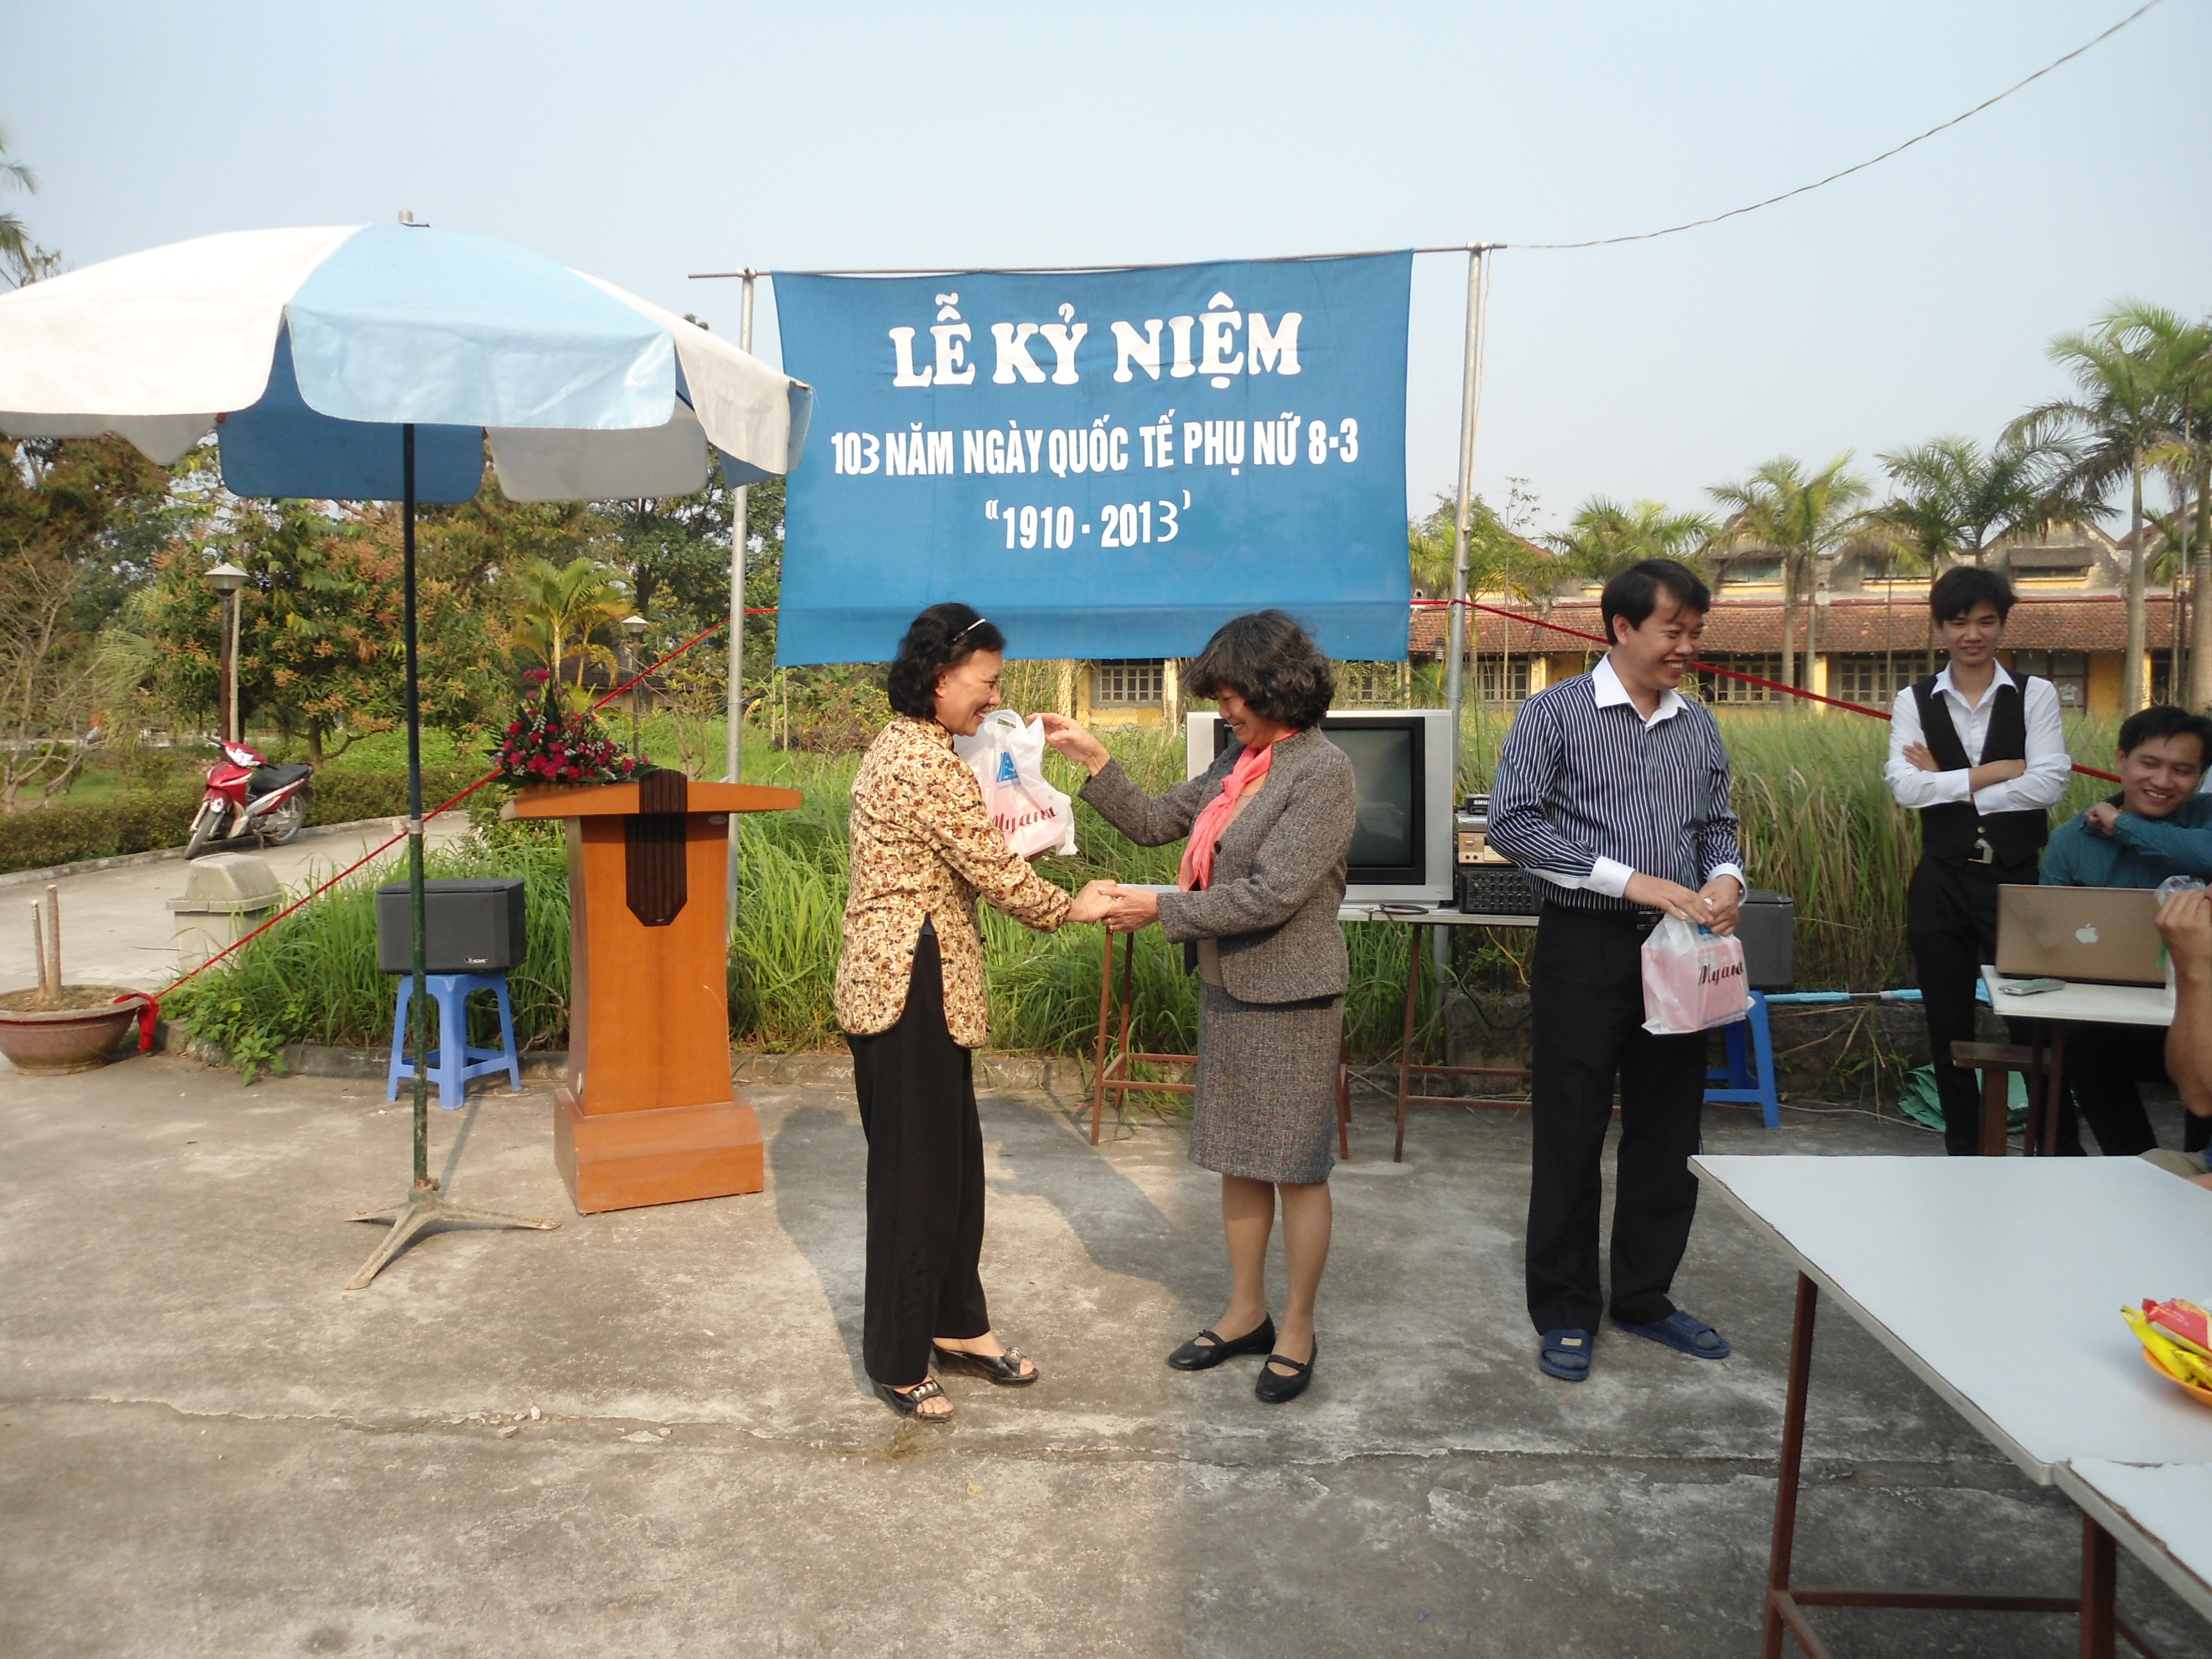 Giám đốc Lộc tặng quà nữ cán bộ - công nhân trong công ty